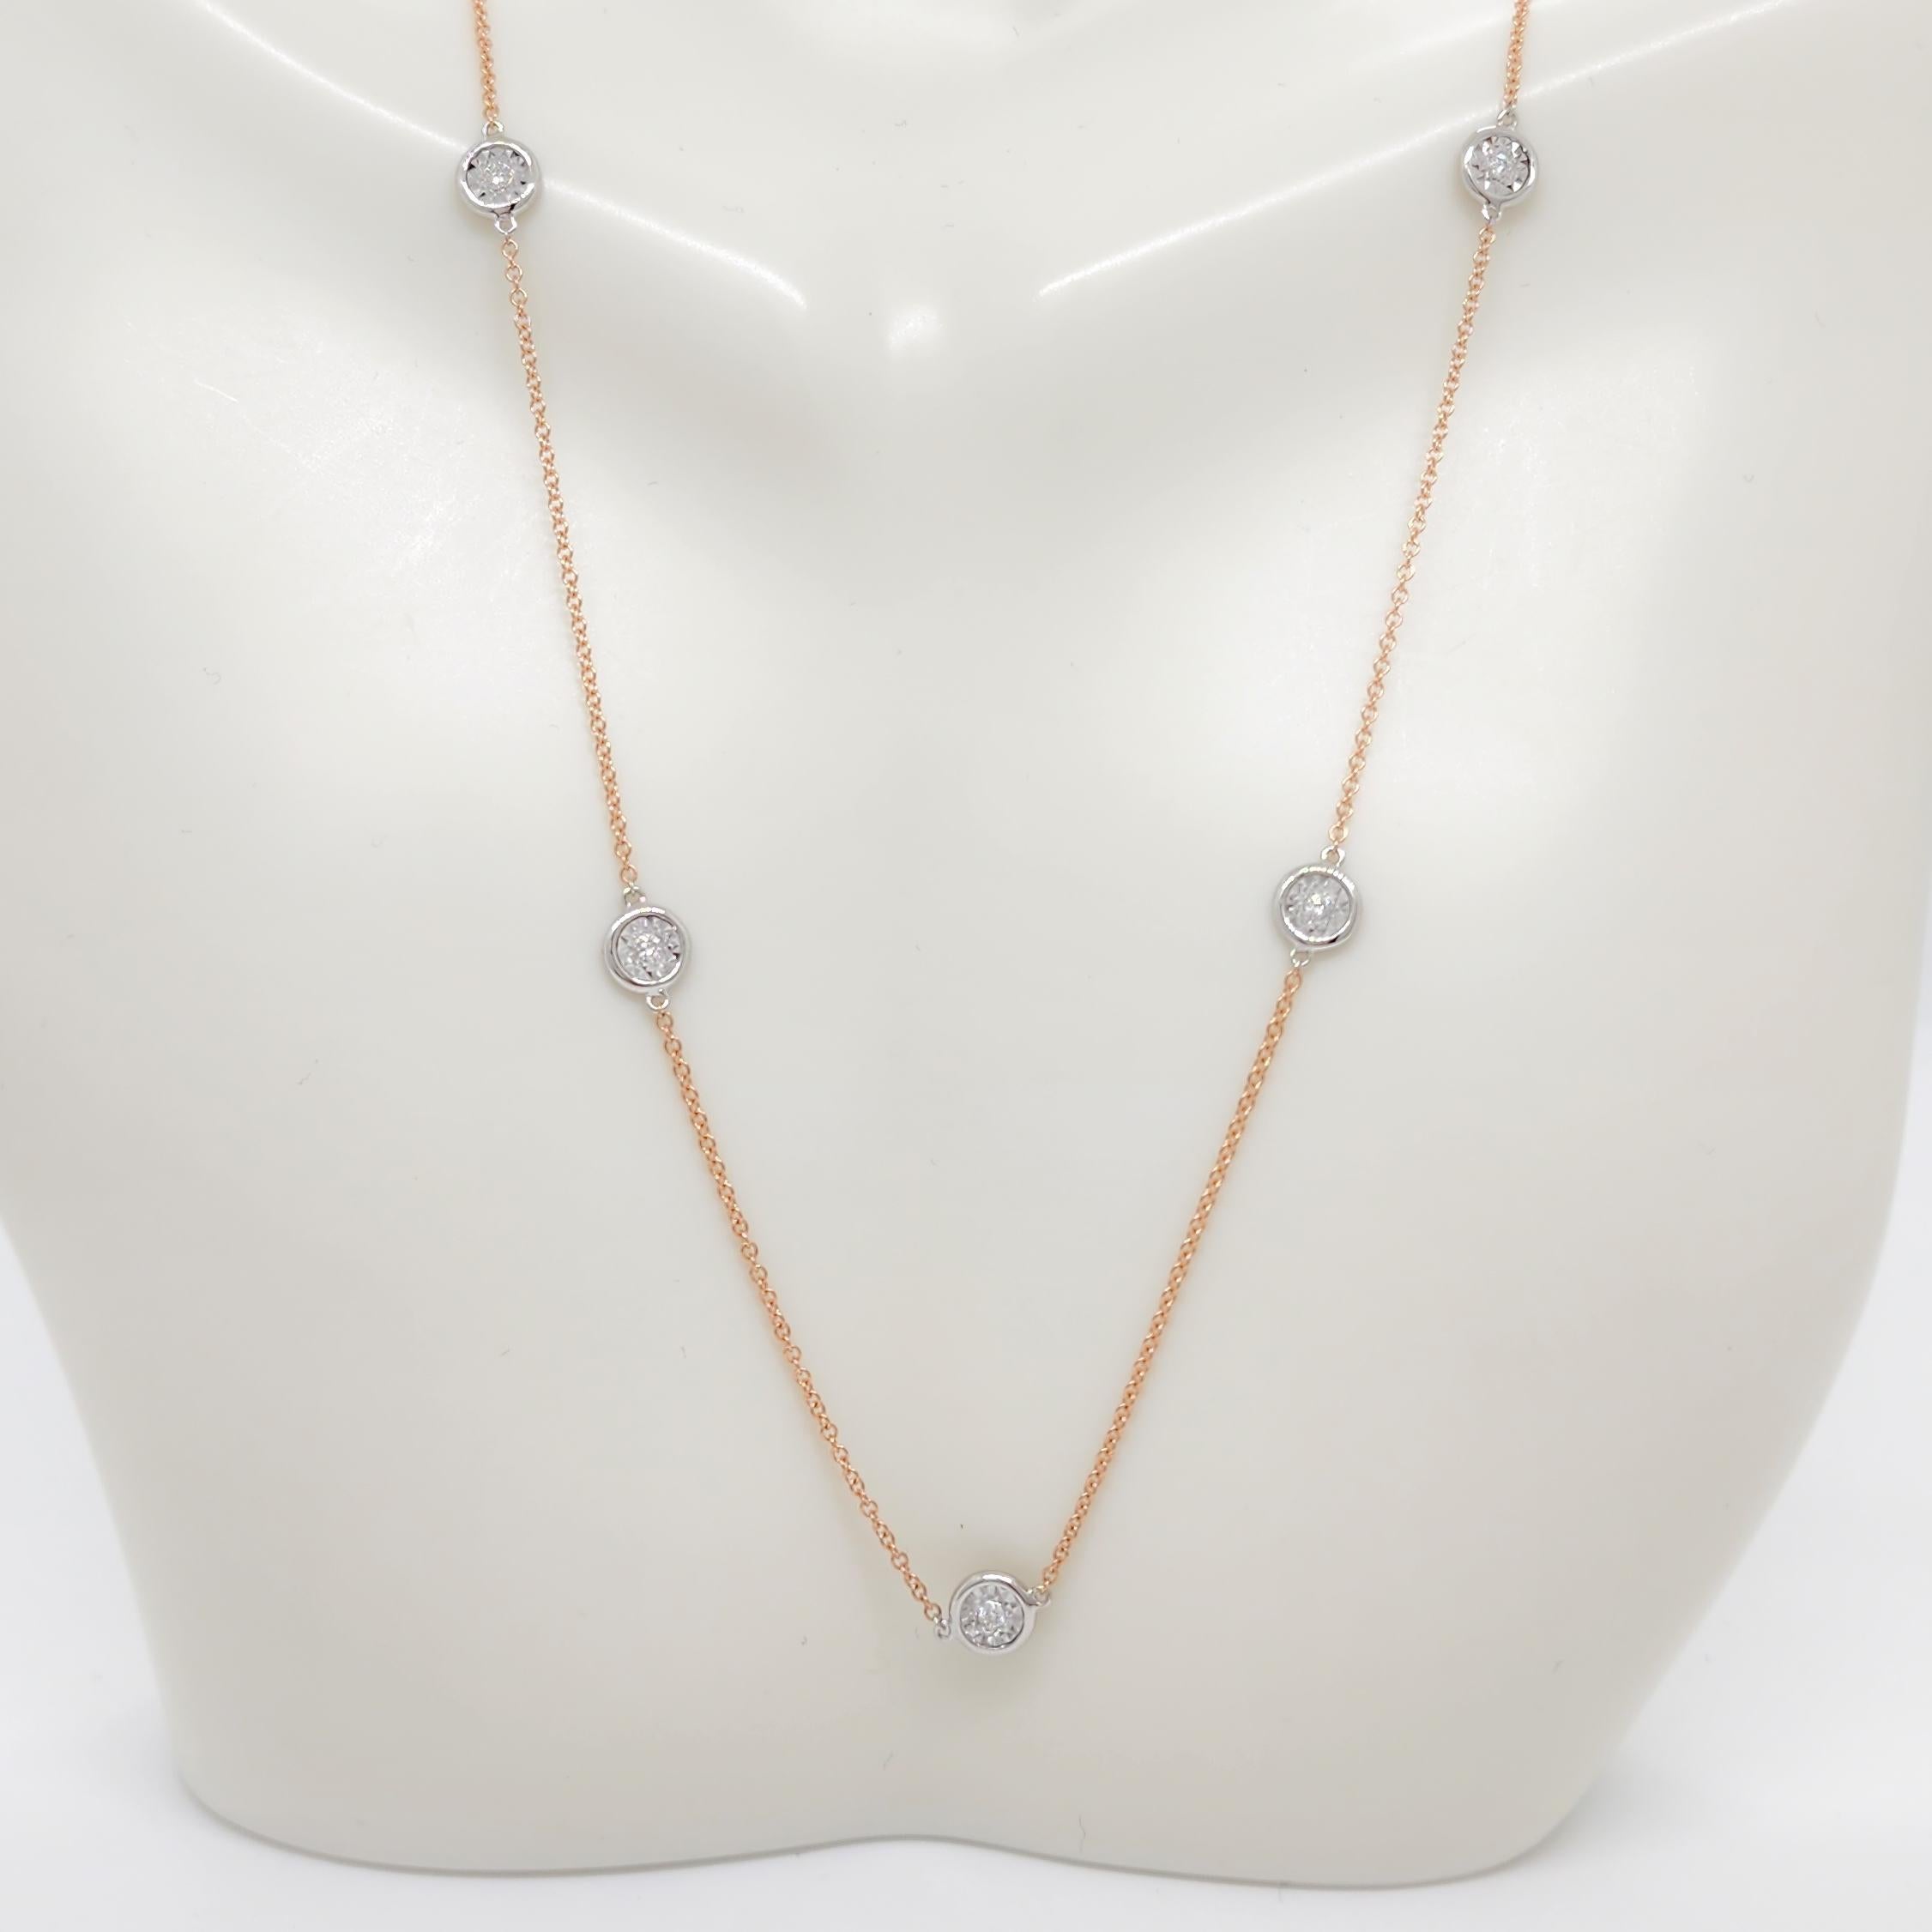 Magnifique collier à chaton en diamant de tous les jours avec des diamants blancs ronds de 0,16 ct. de bonne qualité.  Fabriqué à la main en or rose et blanc 14k.